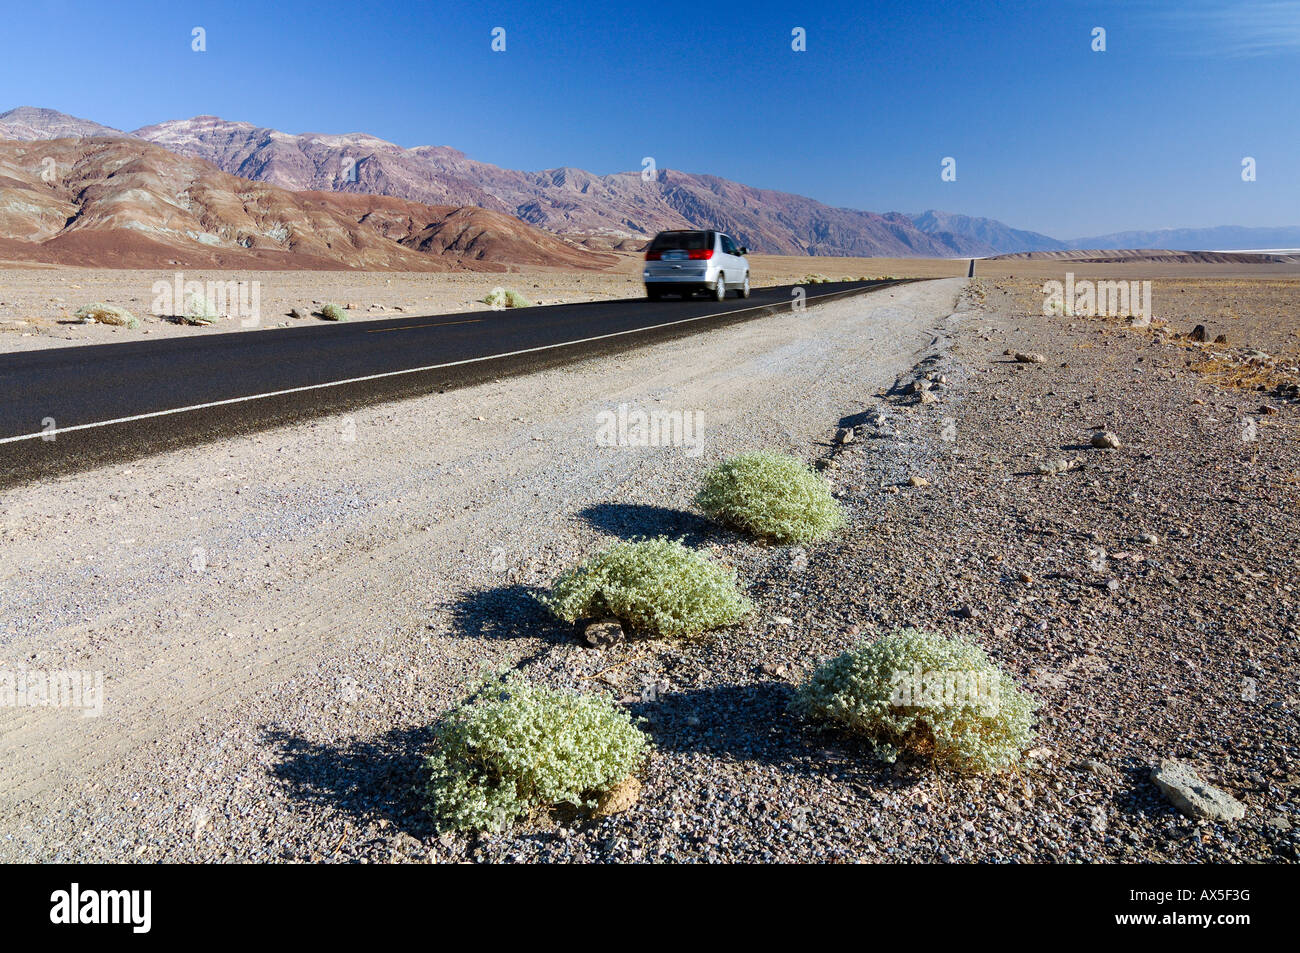 Location de voiture sur l'autoroute 178 dans la vallée de la mort, Death Valley National Park, California, USA, Amérique du Nord Banque D'Images